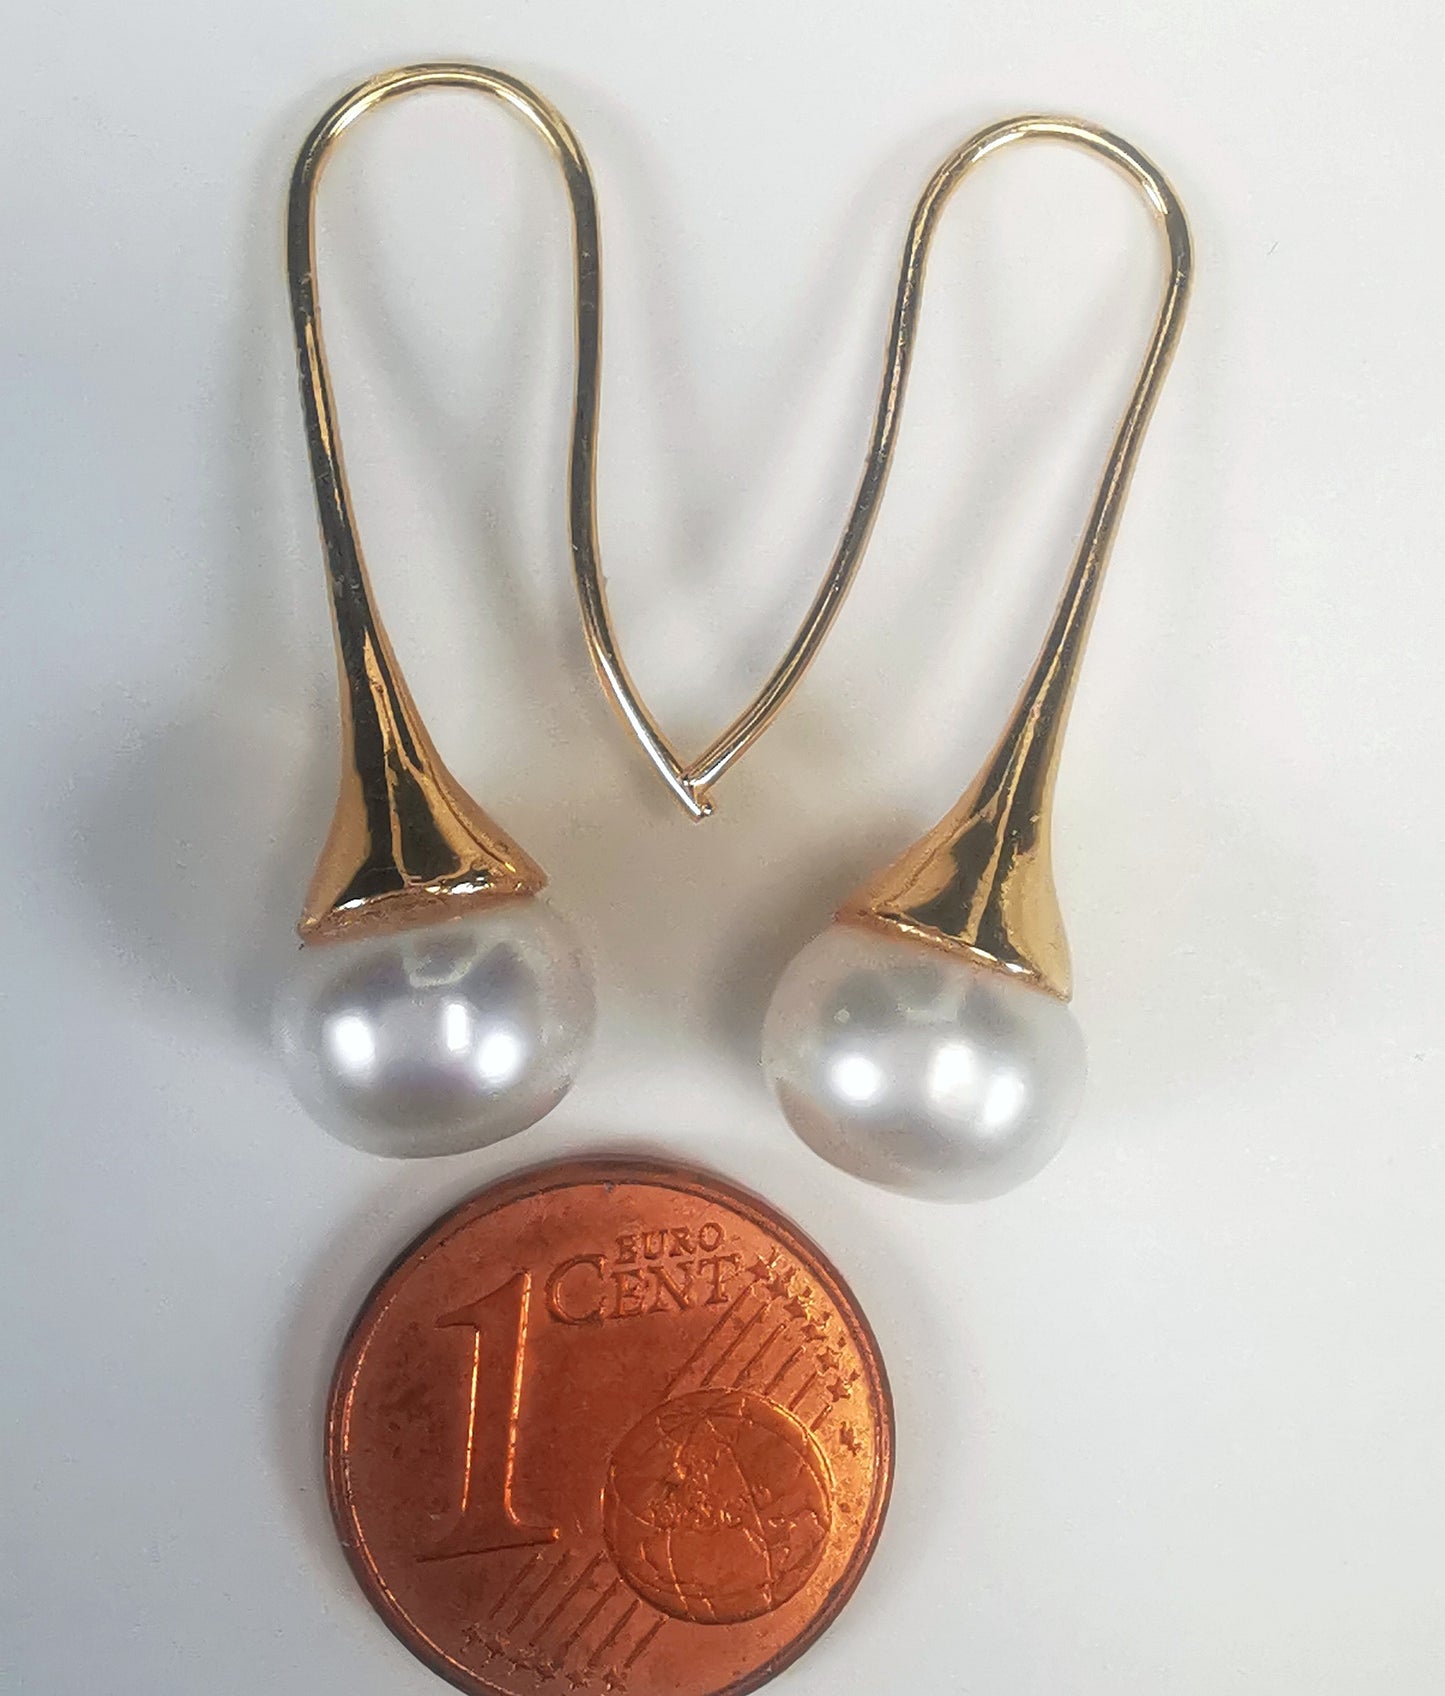 Boucles d'oreilles perles de culture blanches 9mm sur pendants longs plaqués or. Présentées cote o cote, perles en bas, boucle de gauche, pendant tourné vers la droite, celle de droite vers la gauche, au dessus d'une pièce de 1 centime, sur fond blanc. Vue de dessus.